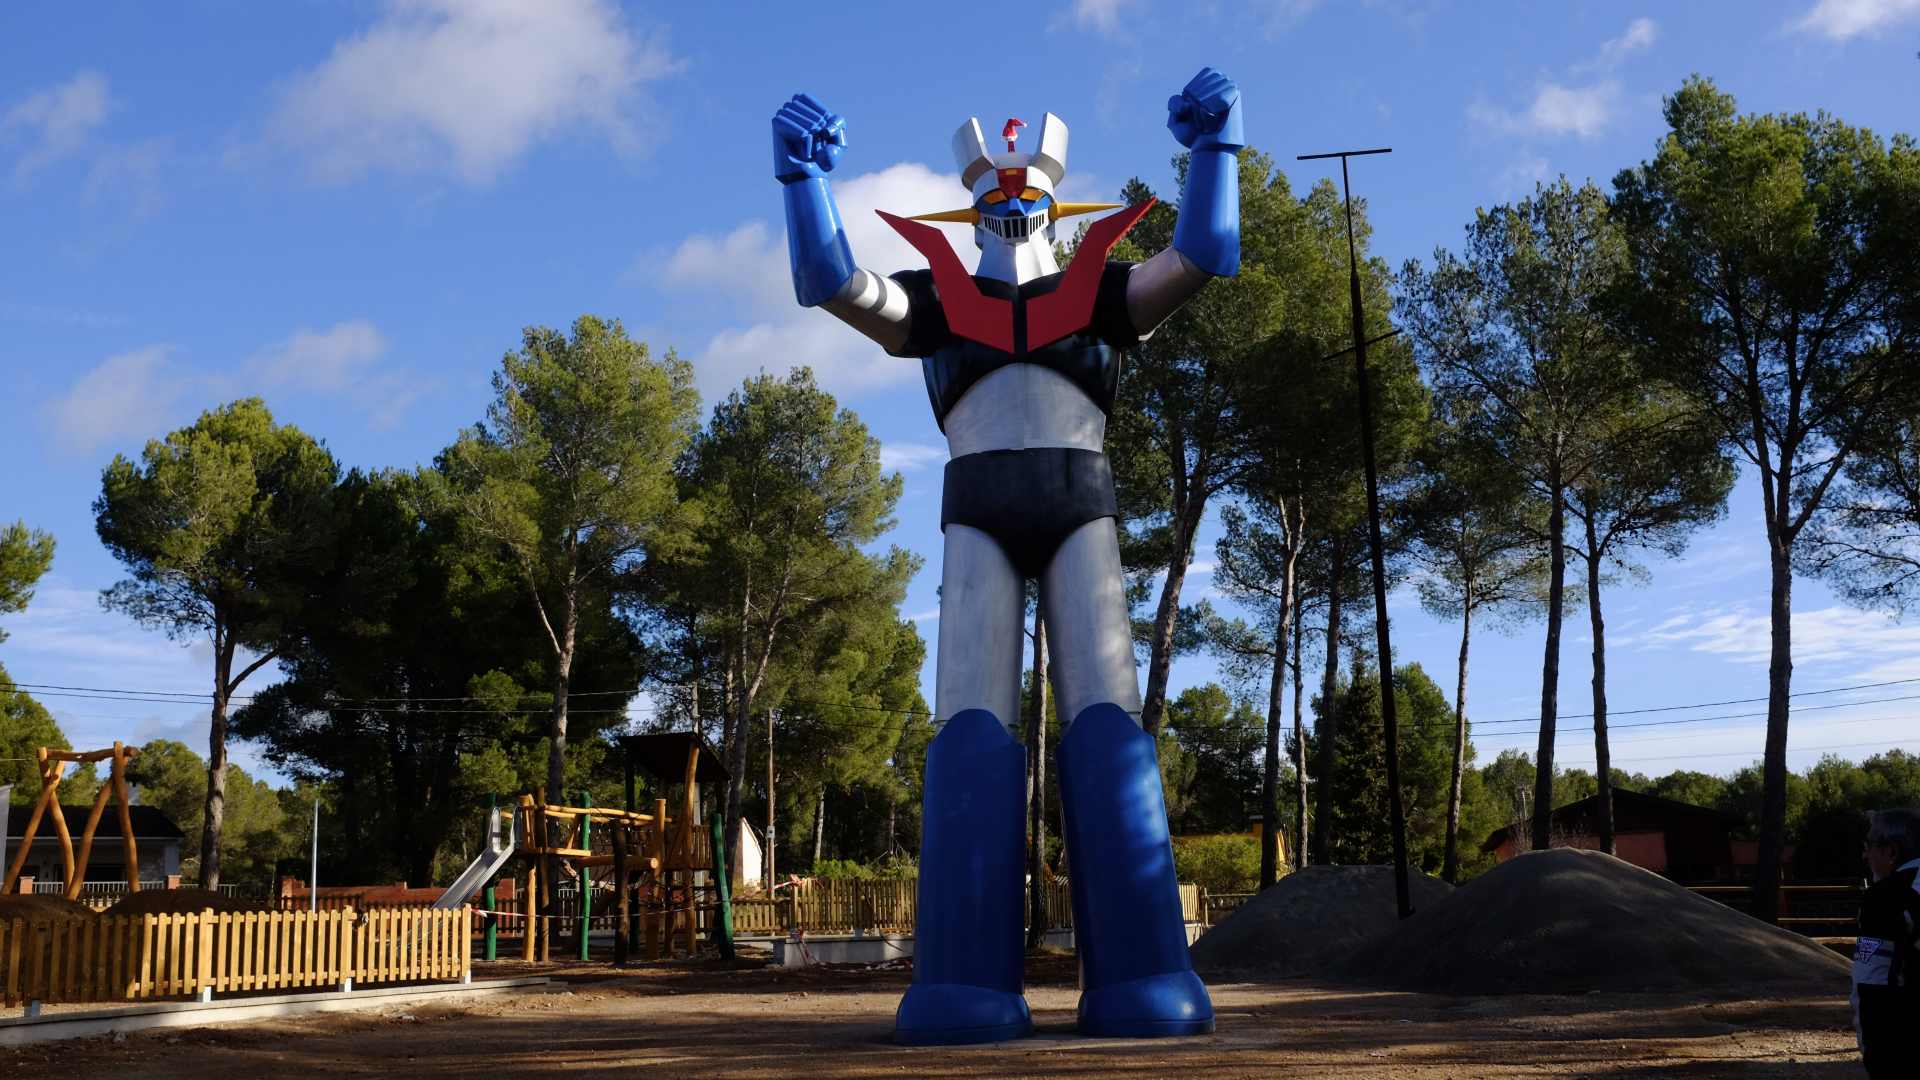 Sabies que hi ha una estàtua de robot gegant en aquest poble català? T'expliquem per què